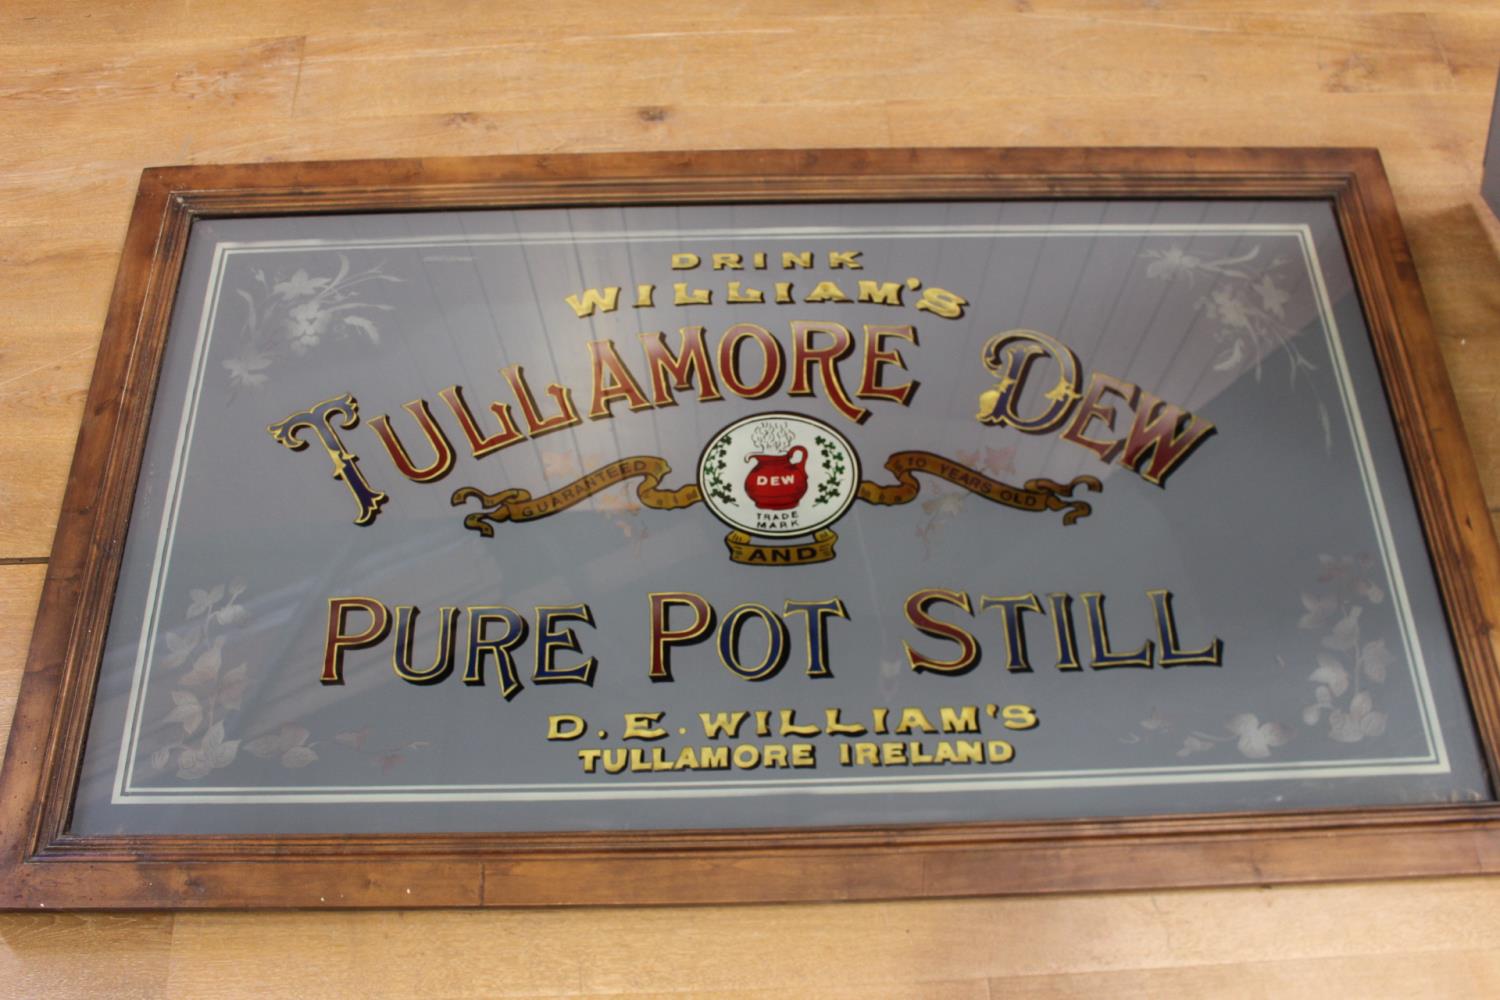 Tullamore Dew Pure Pot Still advertising mirror